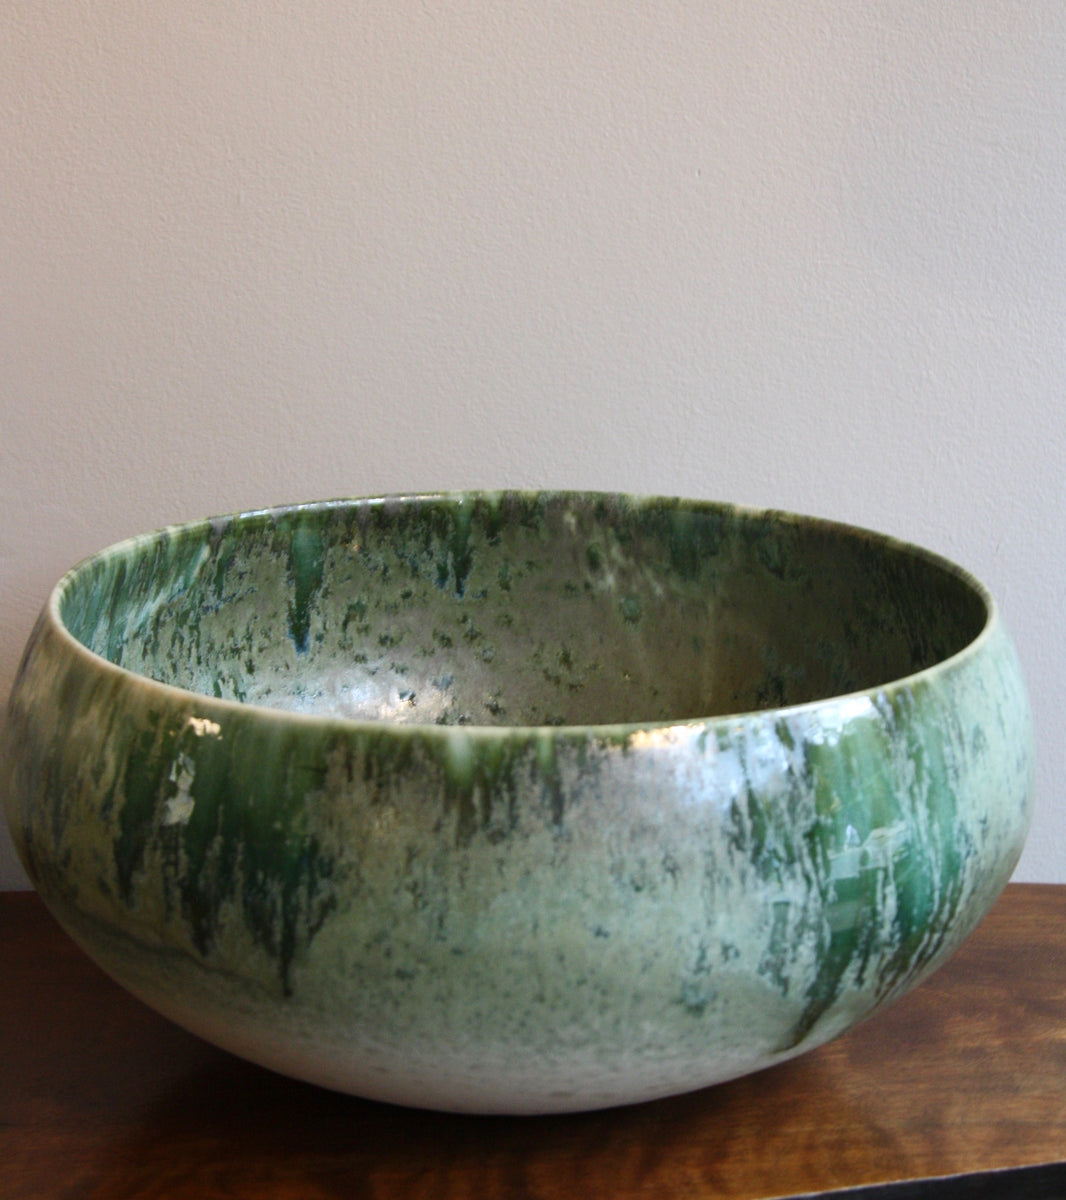 Large Cauldron Shaped Bowl / White & Green Glaze